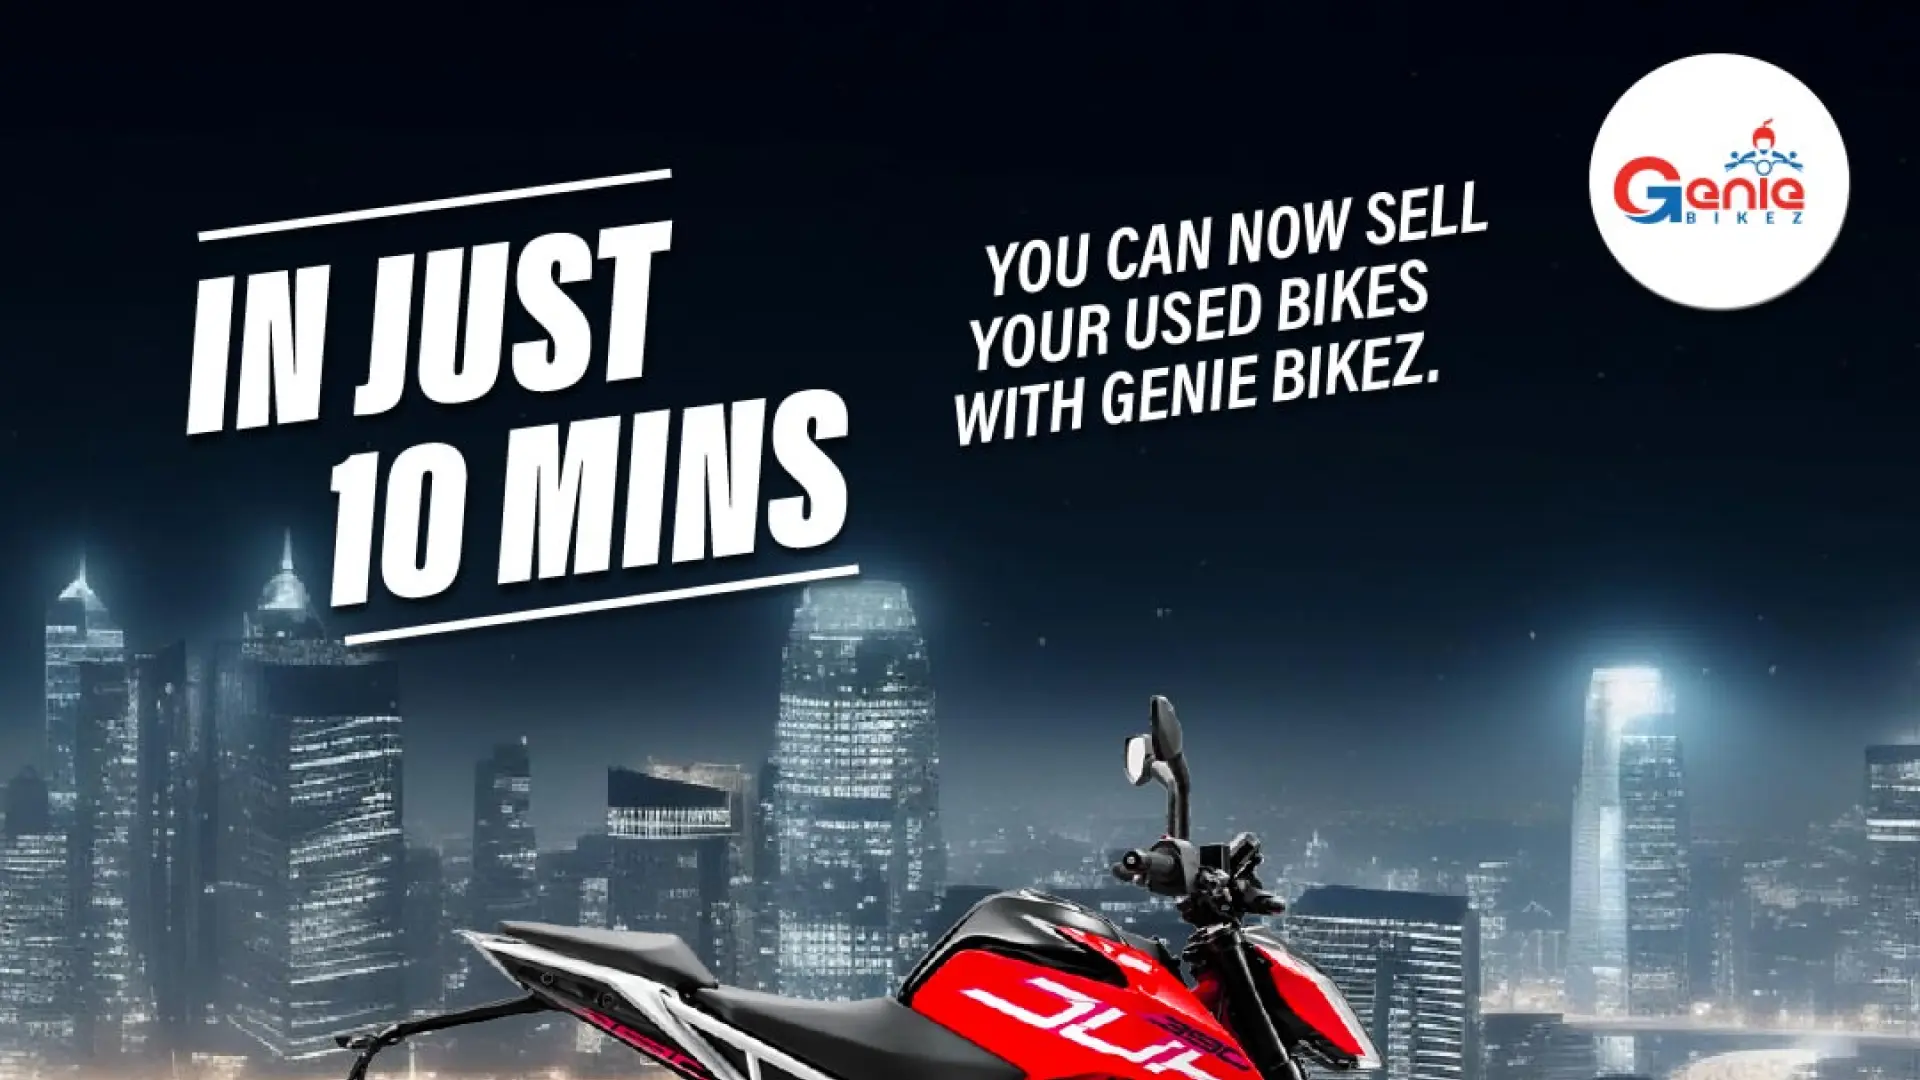 How to sell your bike with Genie Bikez